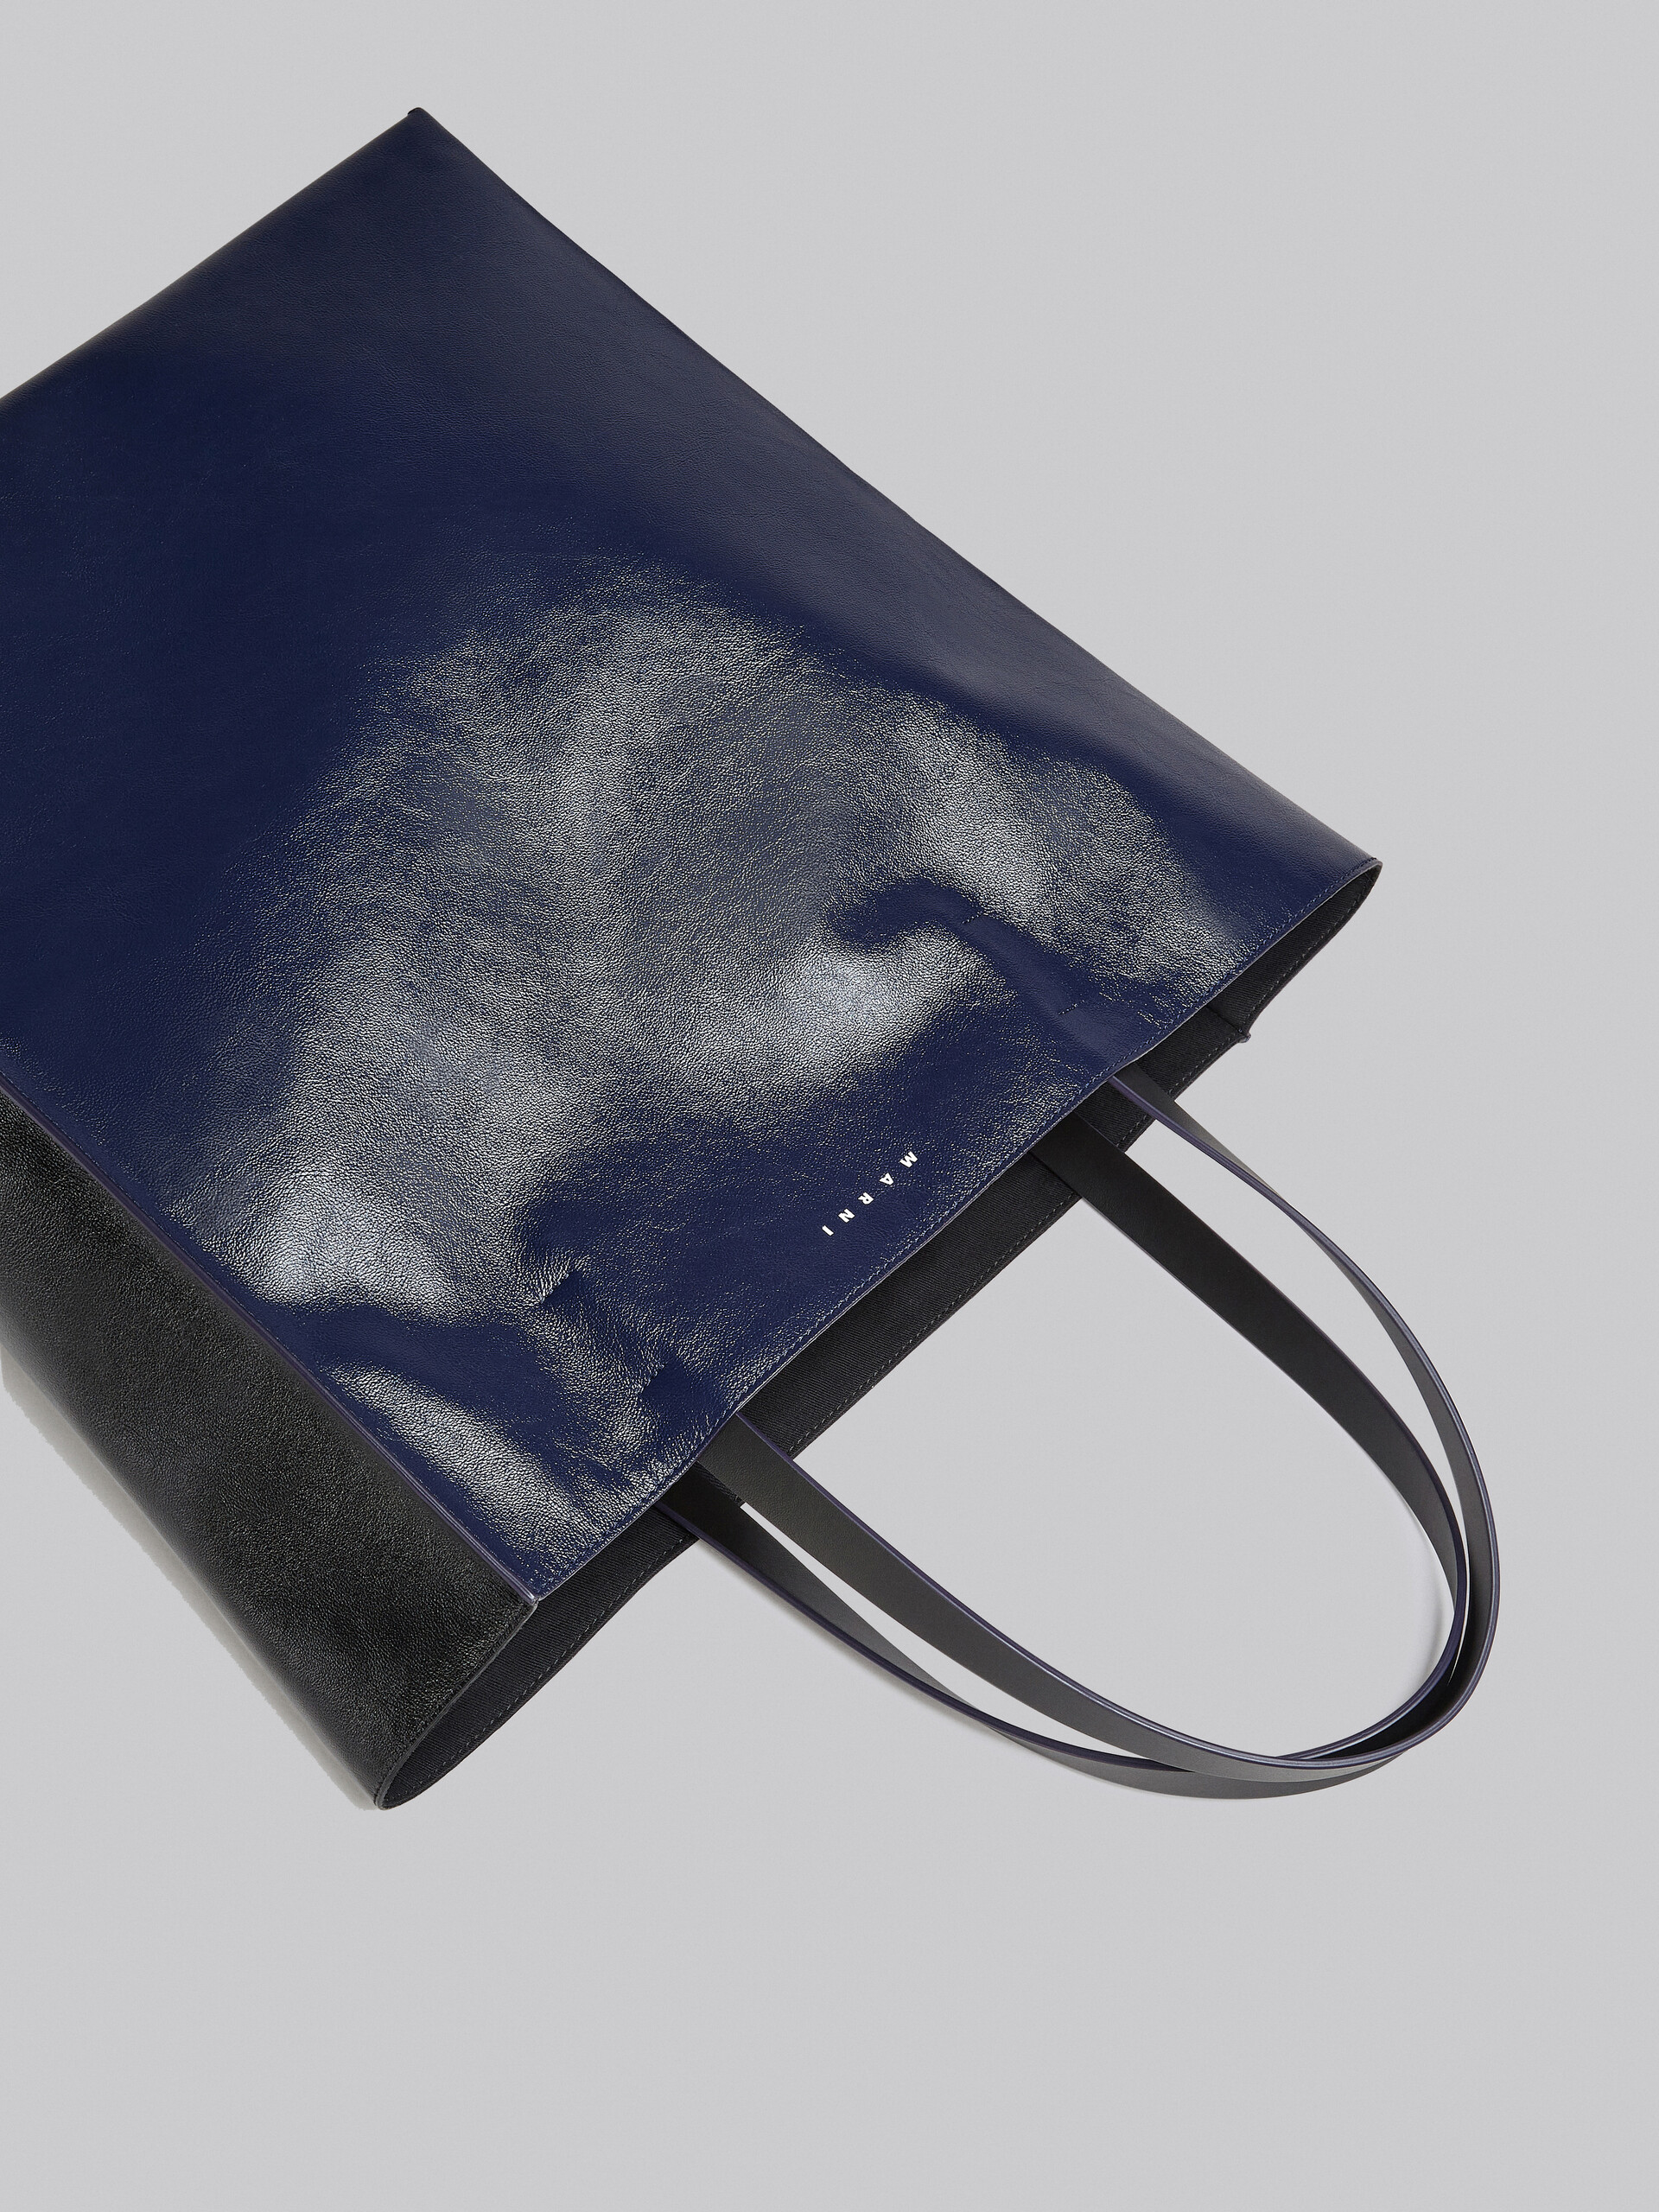 Große Tasche Museo Soft aus Leder in Schwarz und Blau - Shopper - Image 5